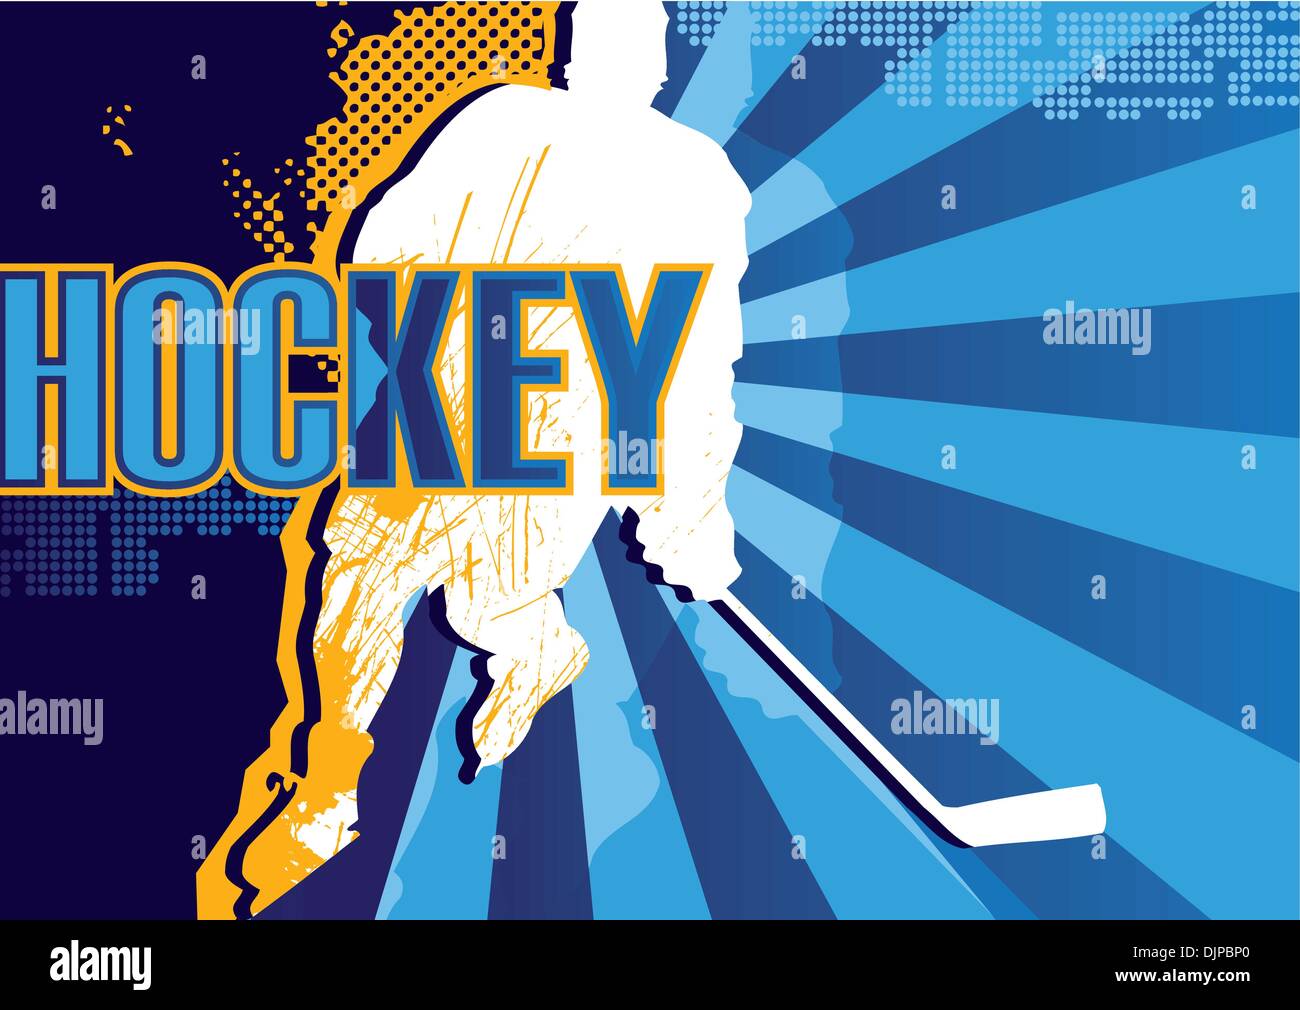 Eishockey abstrakte poster Stock Vektor